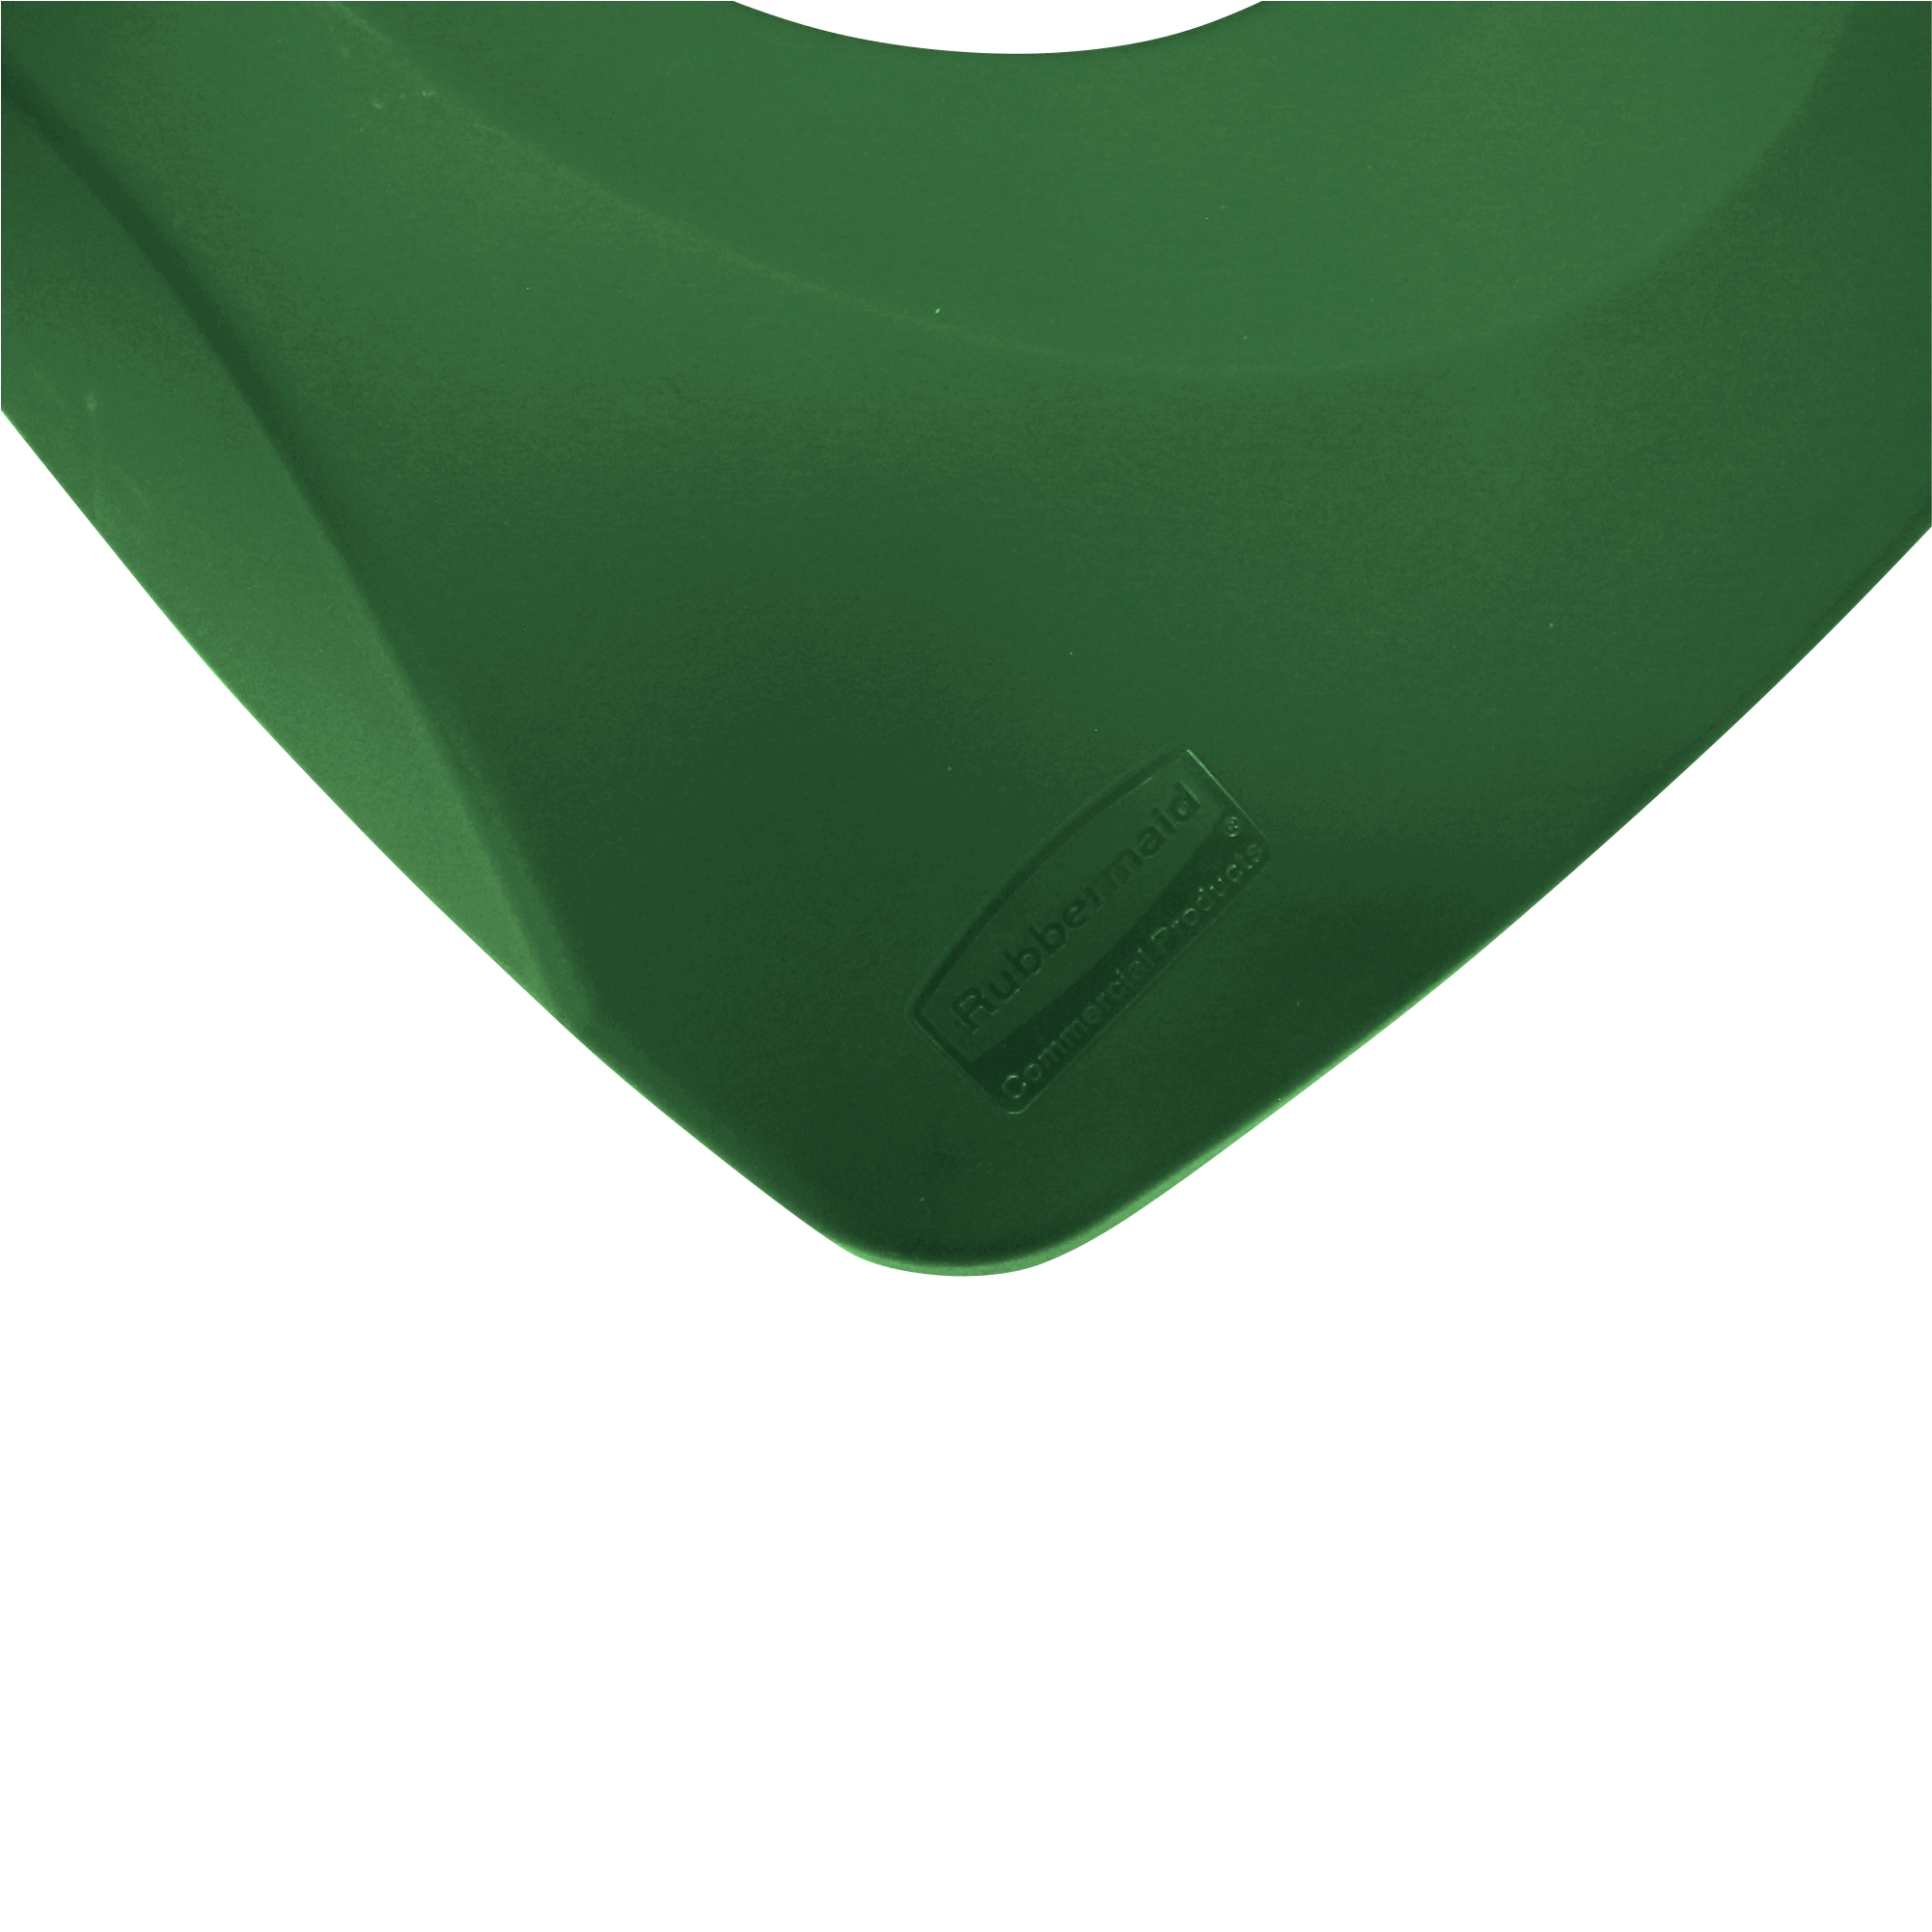 Rubbermaid FG269100GRN tapa untouchable color verde para reciclaje de papel, aplican contenedores FG356907 y FG356988